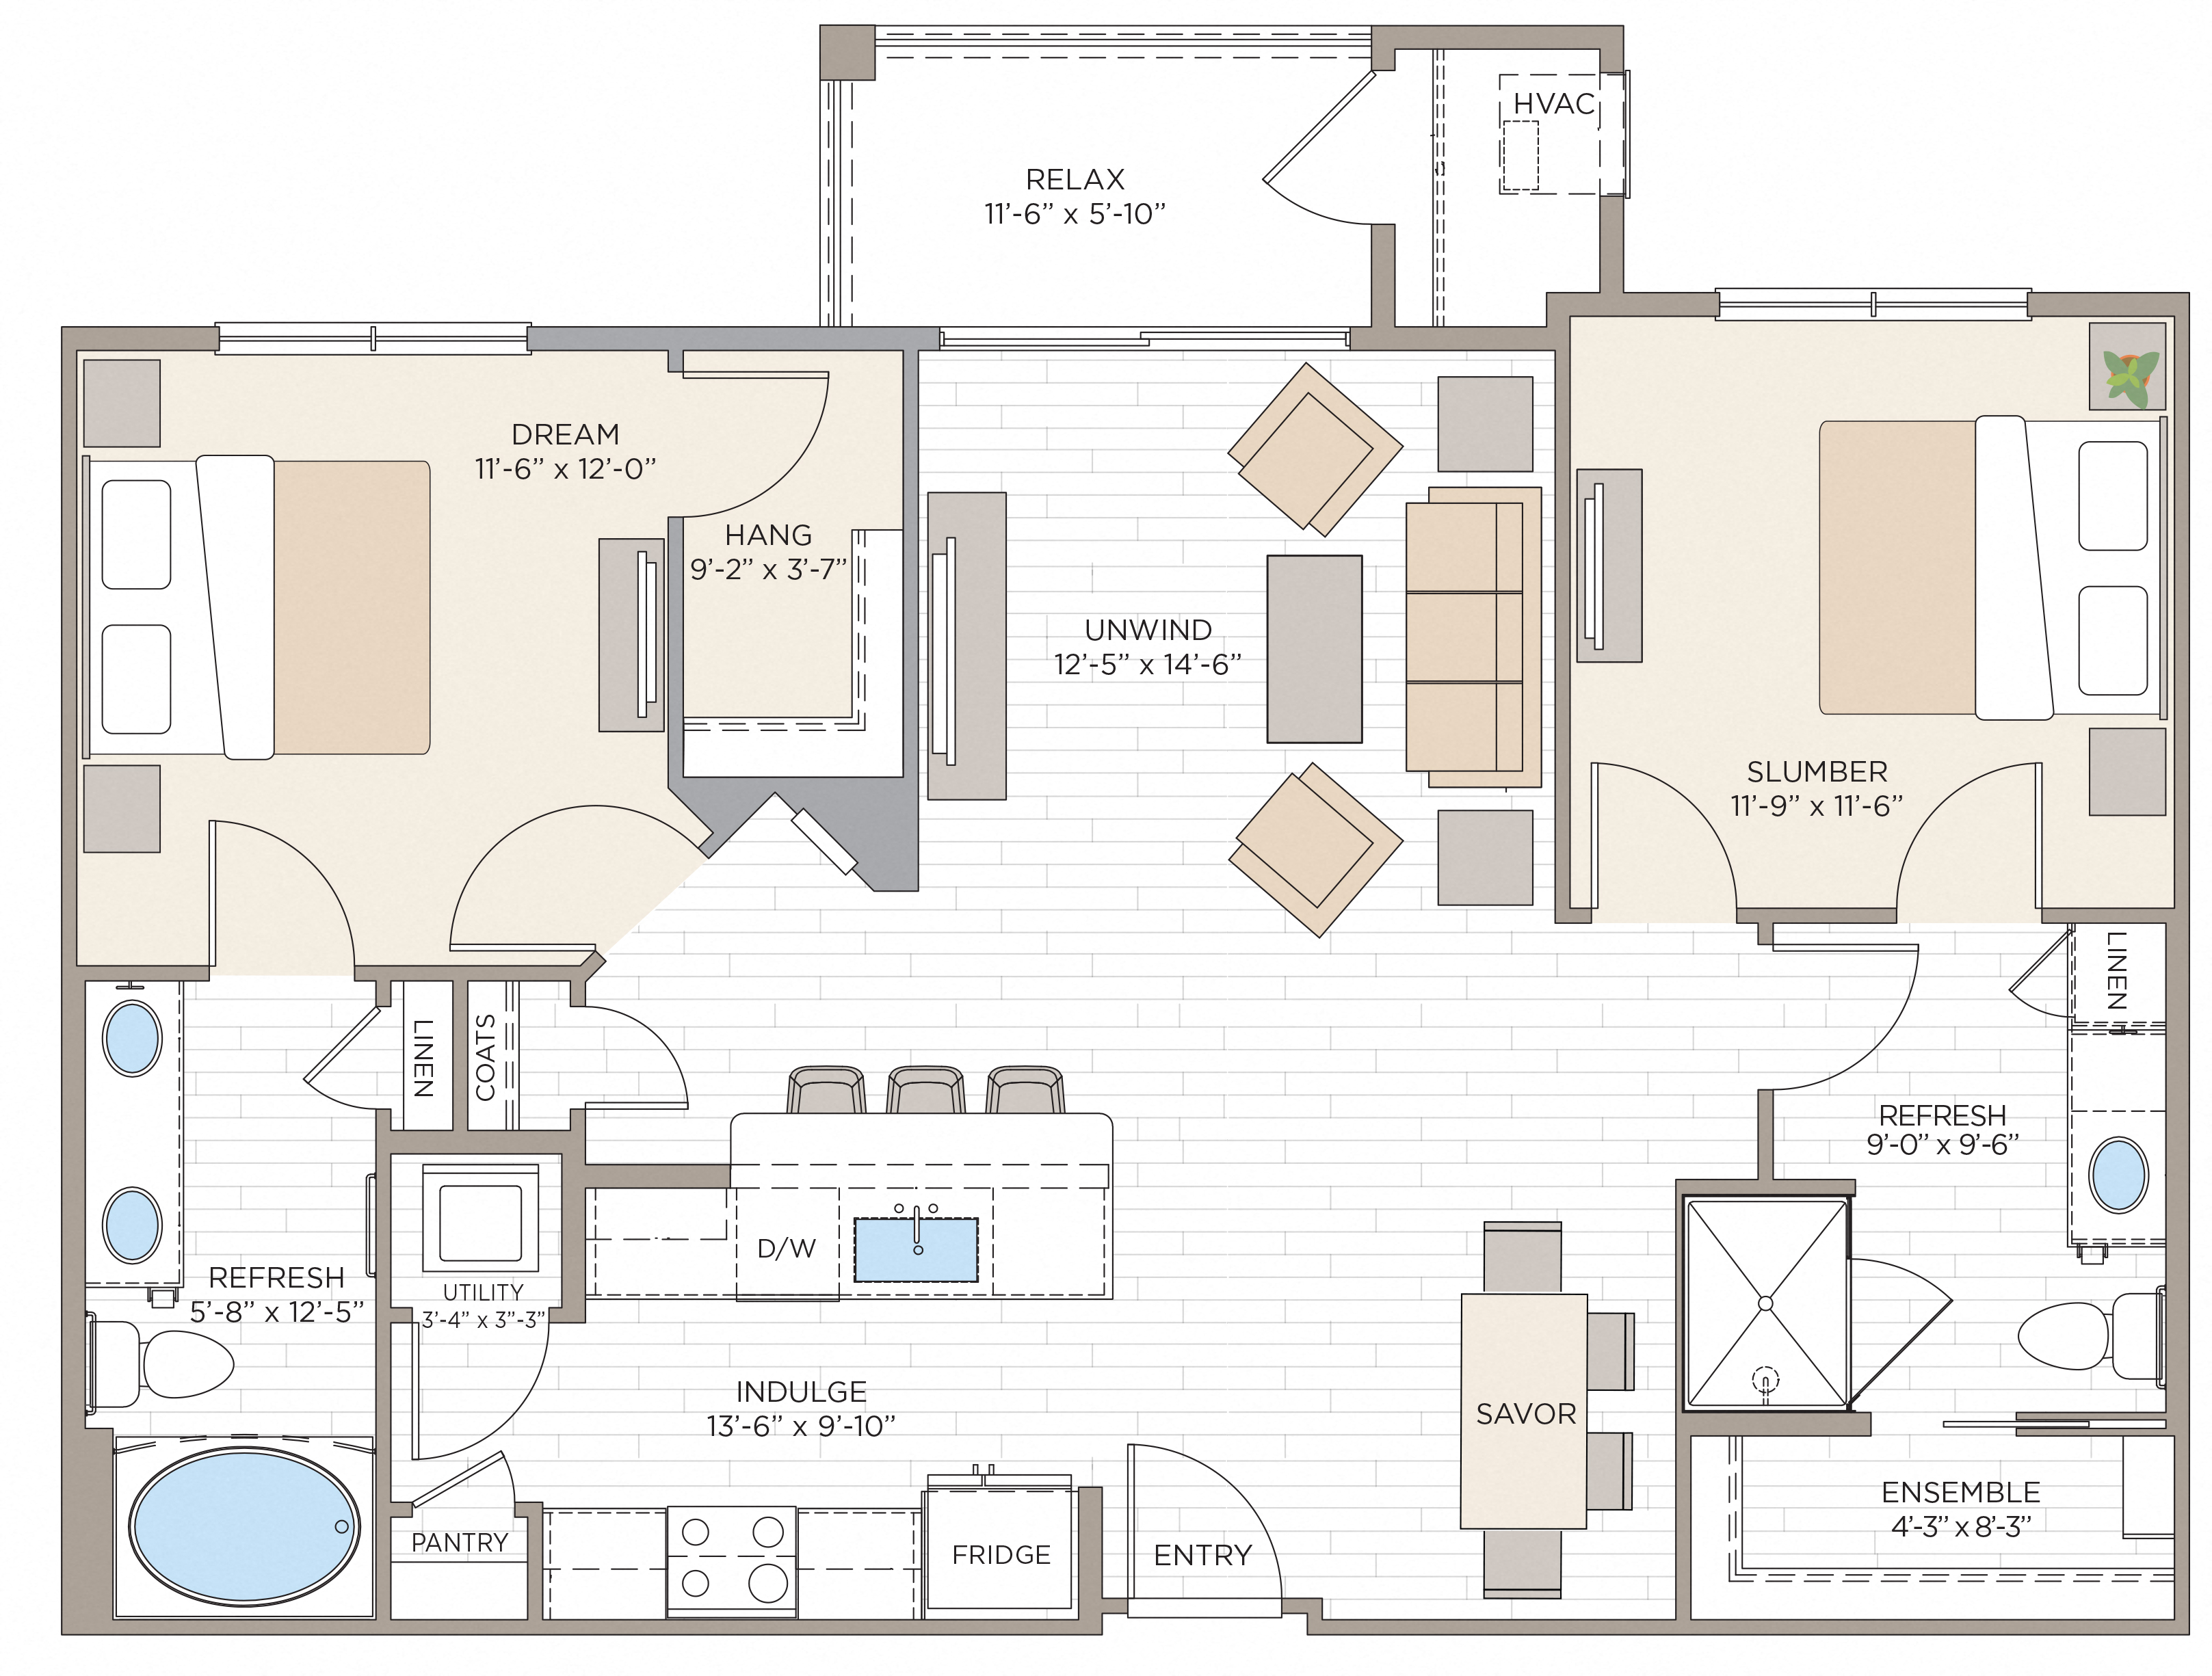 Floorplan for Unit #B2A, 2 bedroom unit at Halstead Maynard Crossing